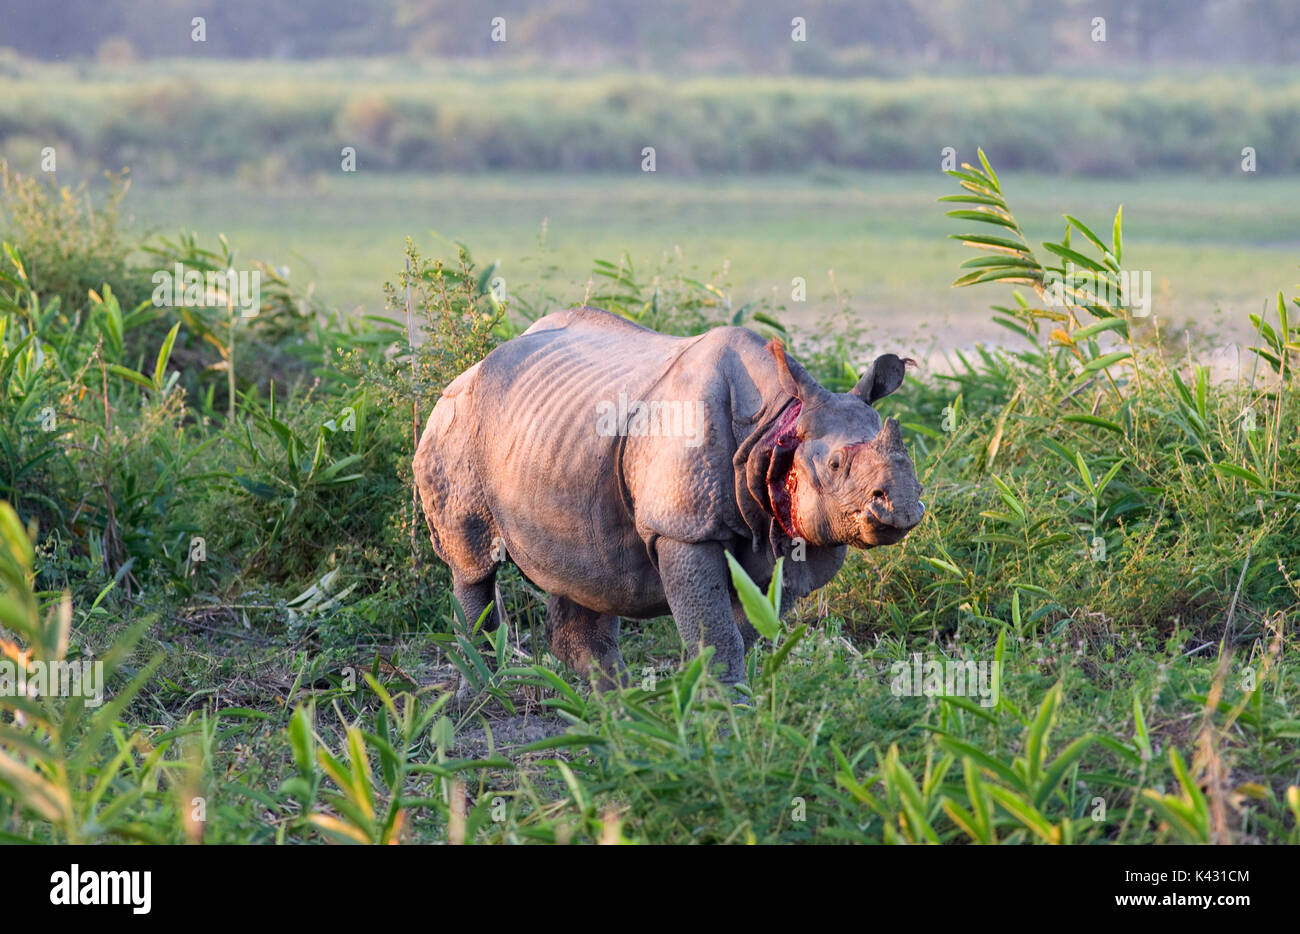 Rhinocéros indien, Rhinoceros unicornis, blessé après avoir combattu, le parc national de Kaziranga, Assam, Inde, patrimoine mondial et l'UICN UICN, site de catégorie II 2 Banque D'Images